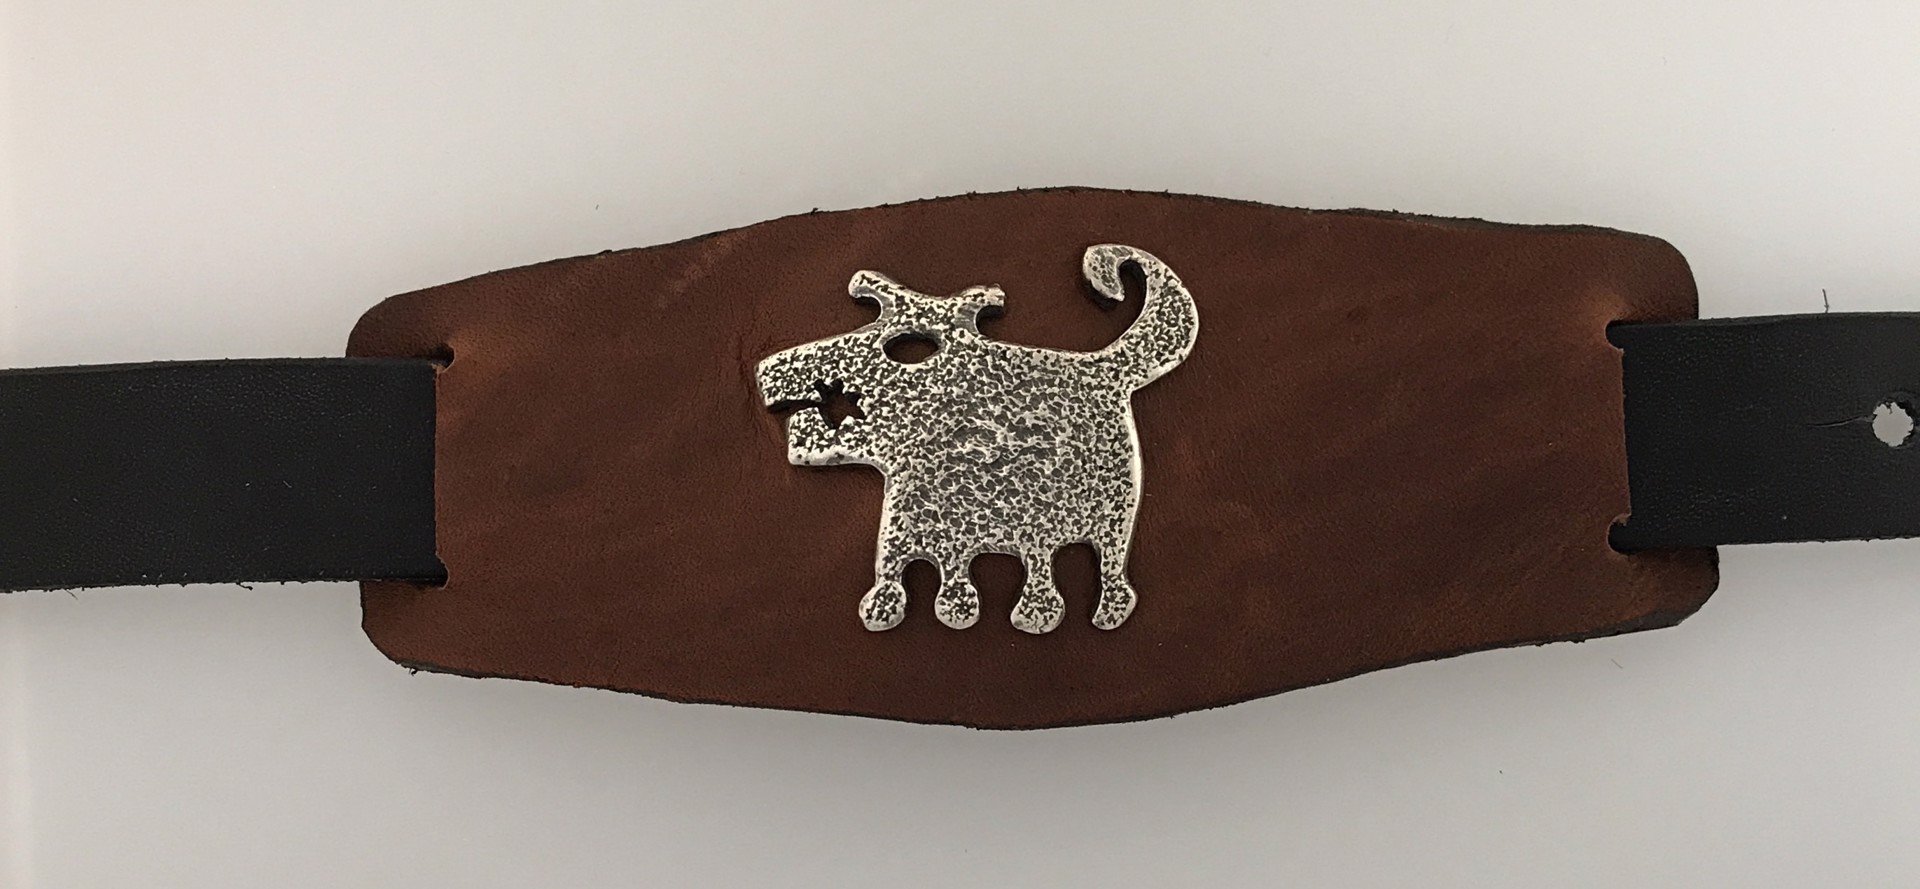 Leather cuff with Silver rez dog by Melanie A. Yazzie